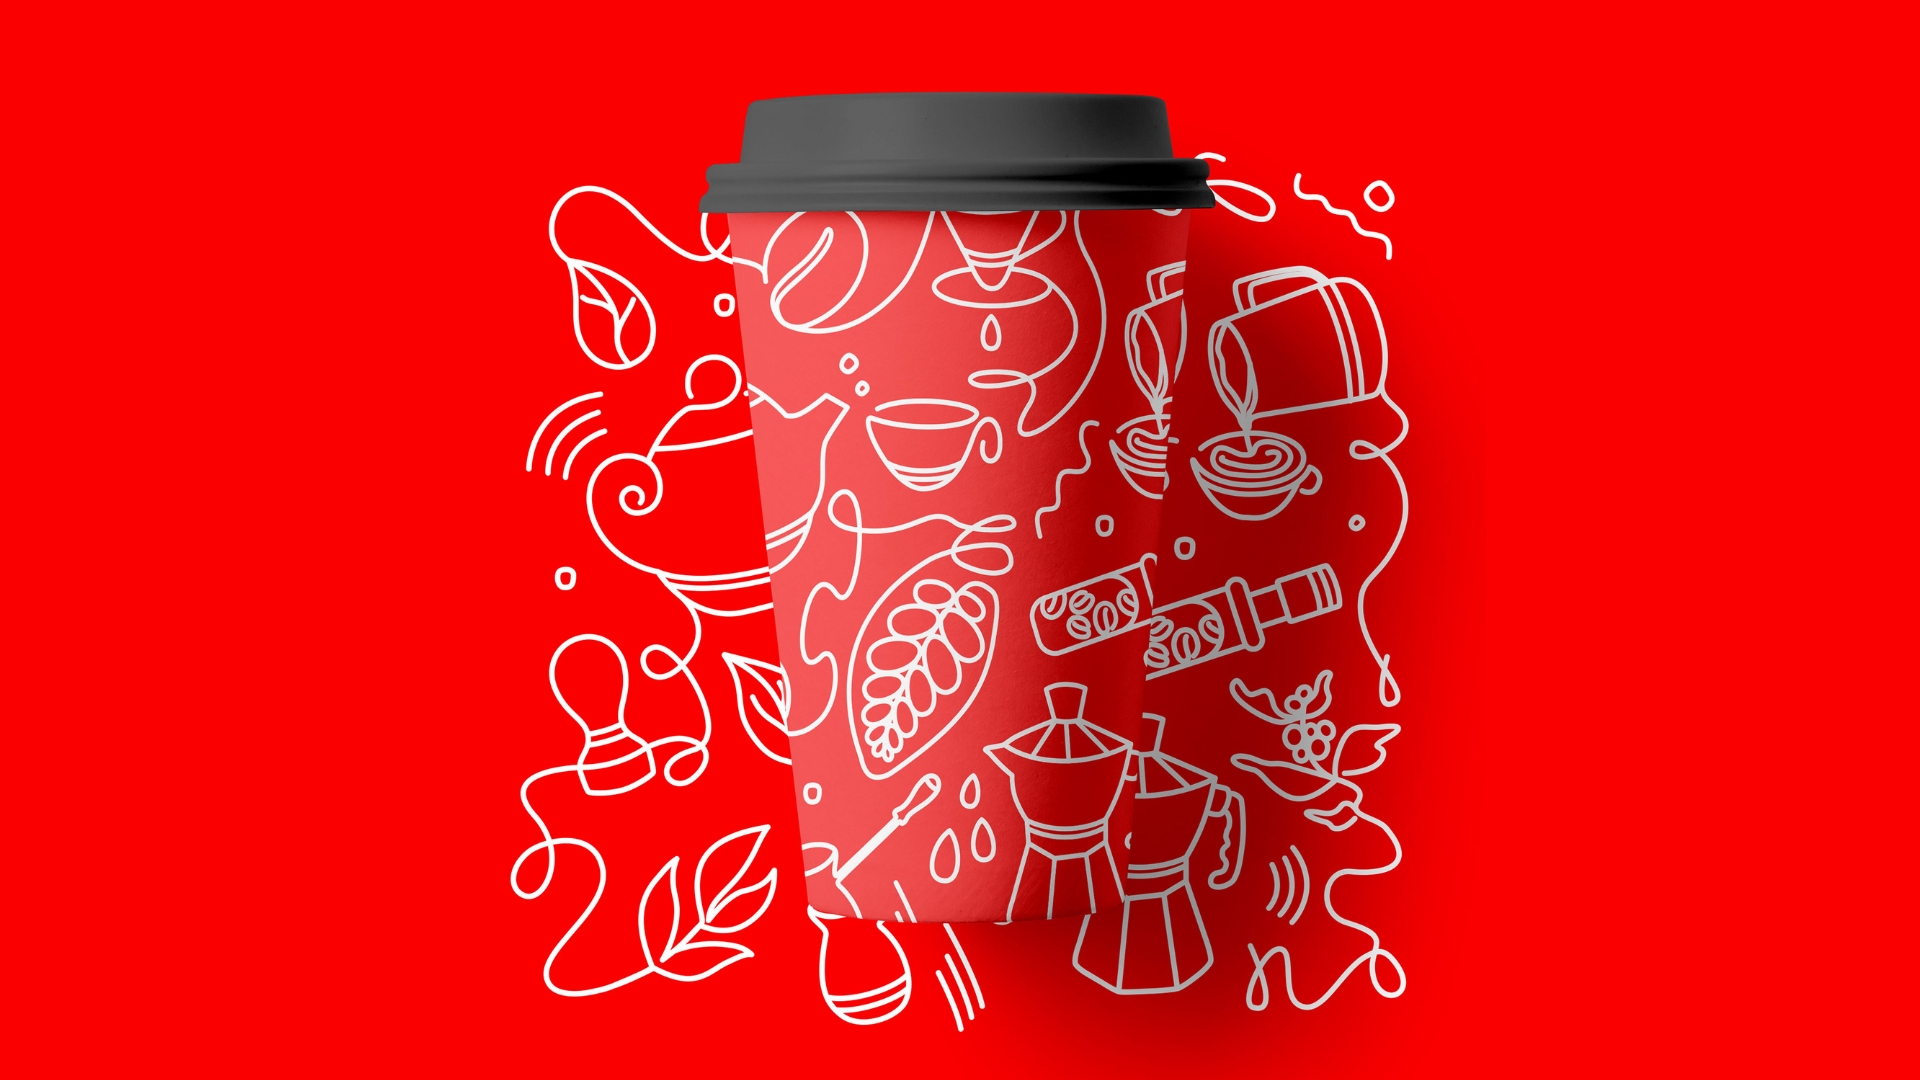 Coffee Tea Cacao Expo logo.